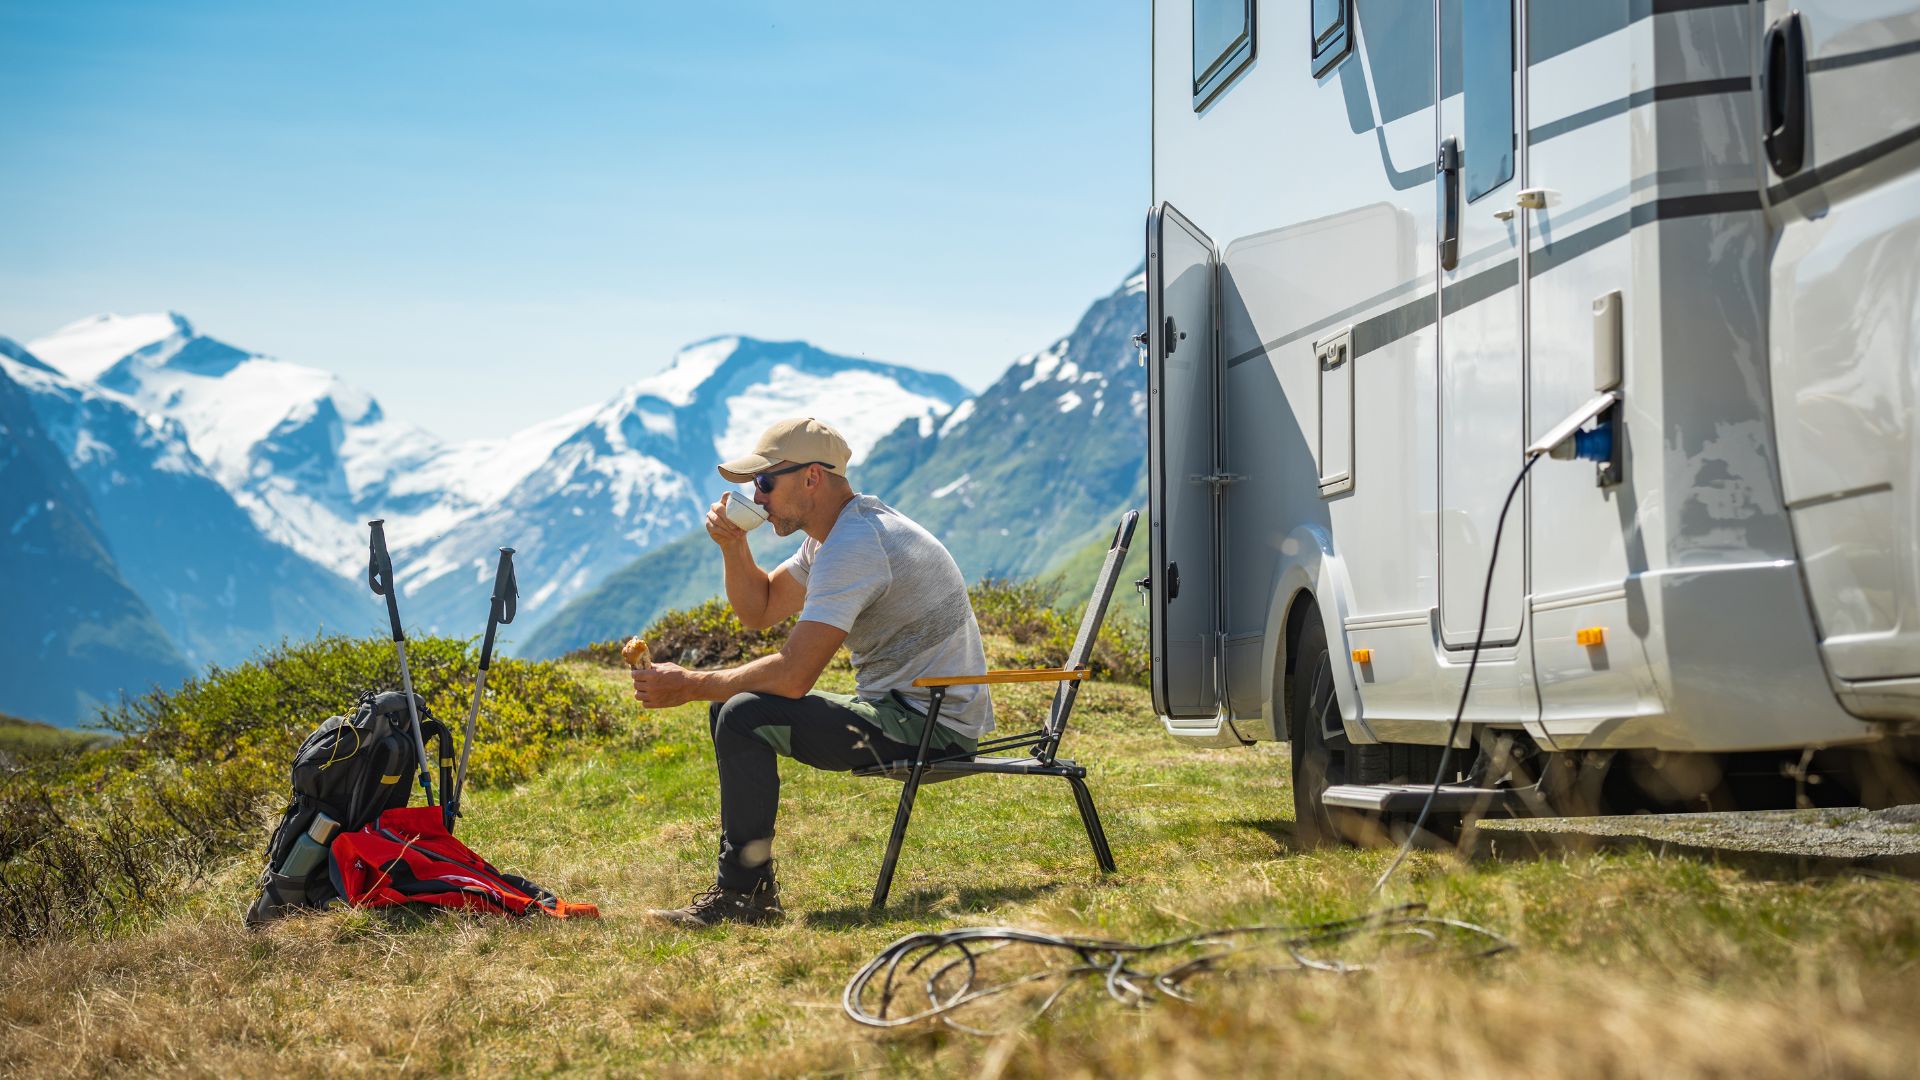 Camping Generators review